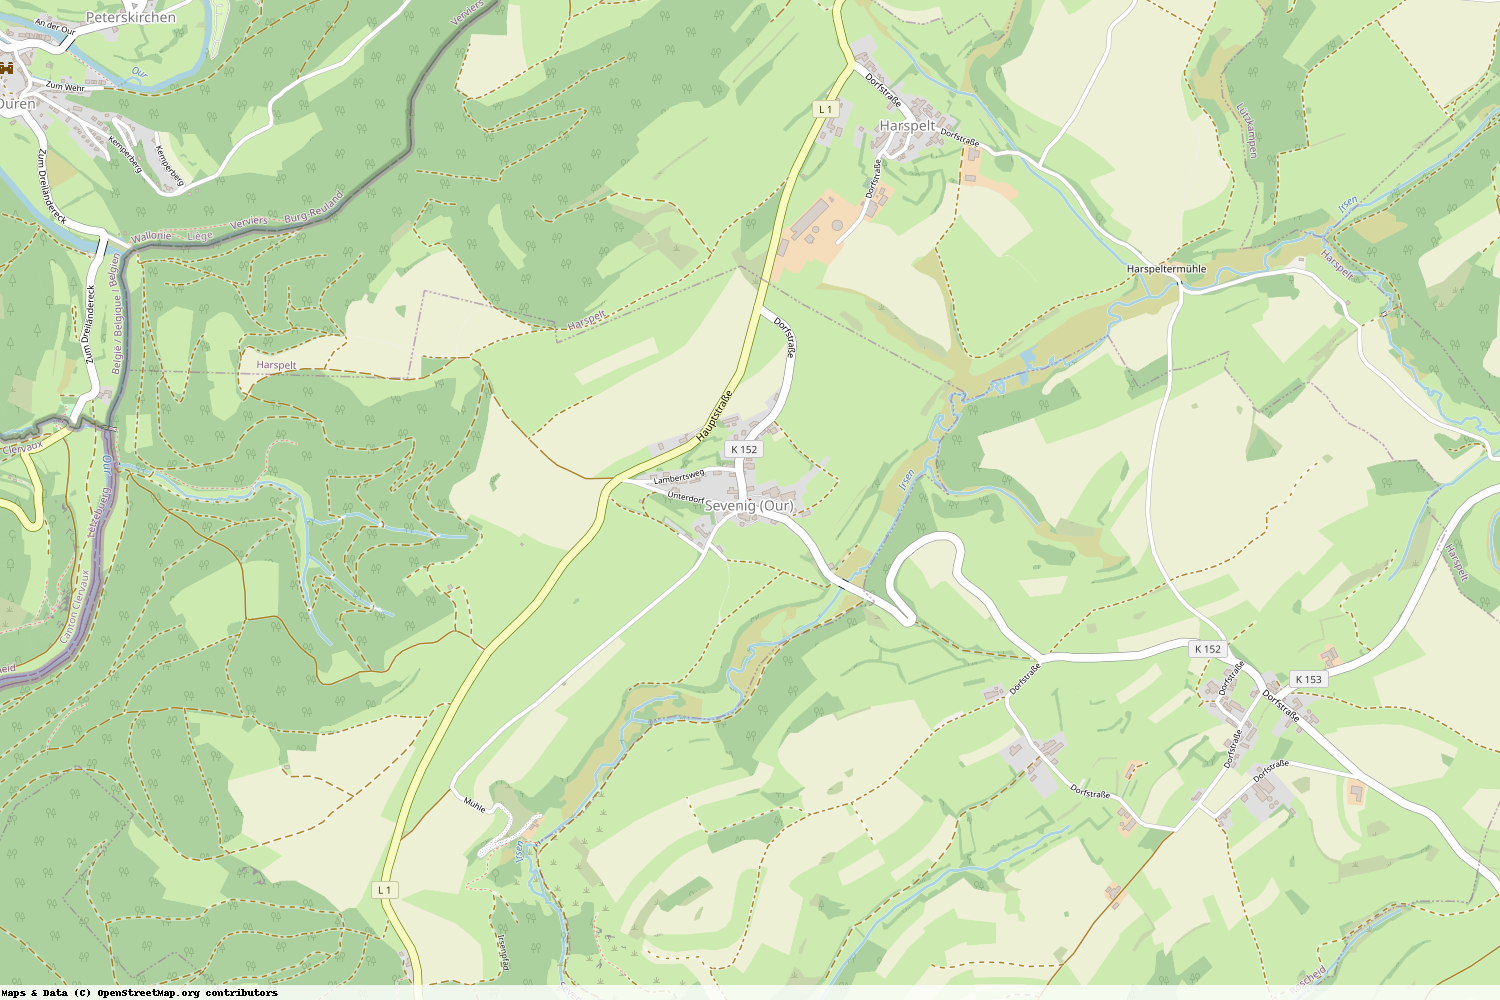 Ist gerade Stromausfall in Rheinland-Pfalz - Eifelkreis Bitburg-Prüm - Sevenig (Our)?